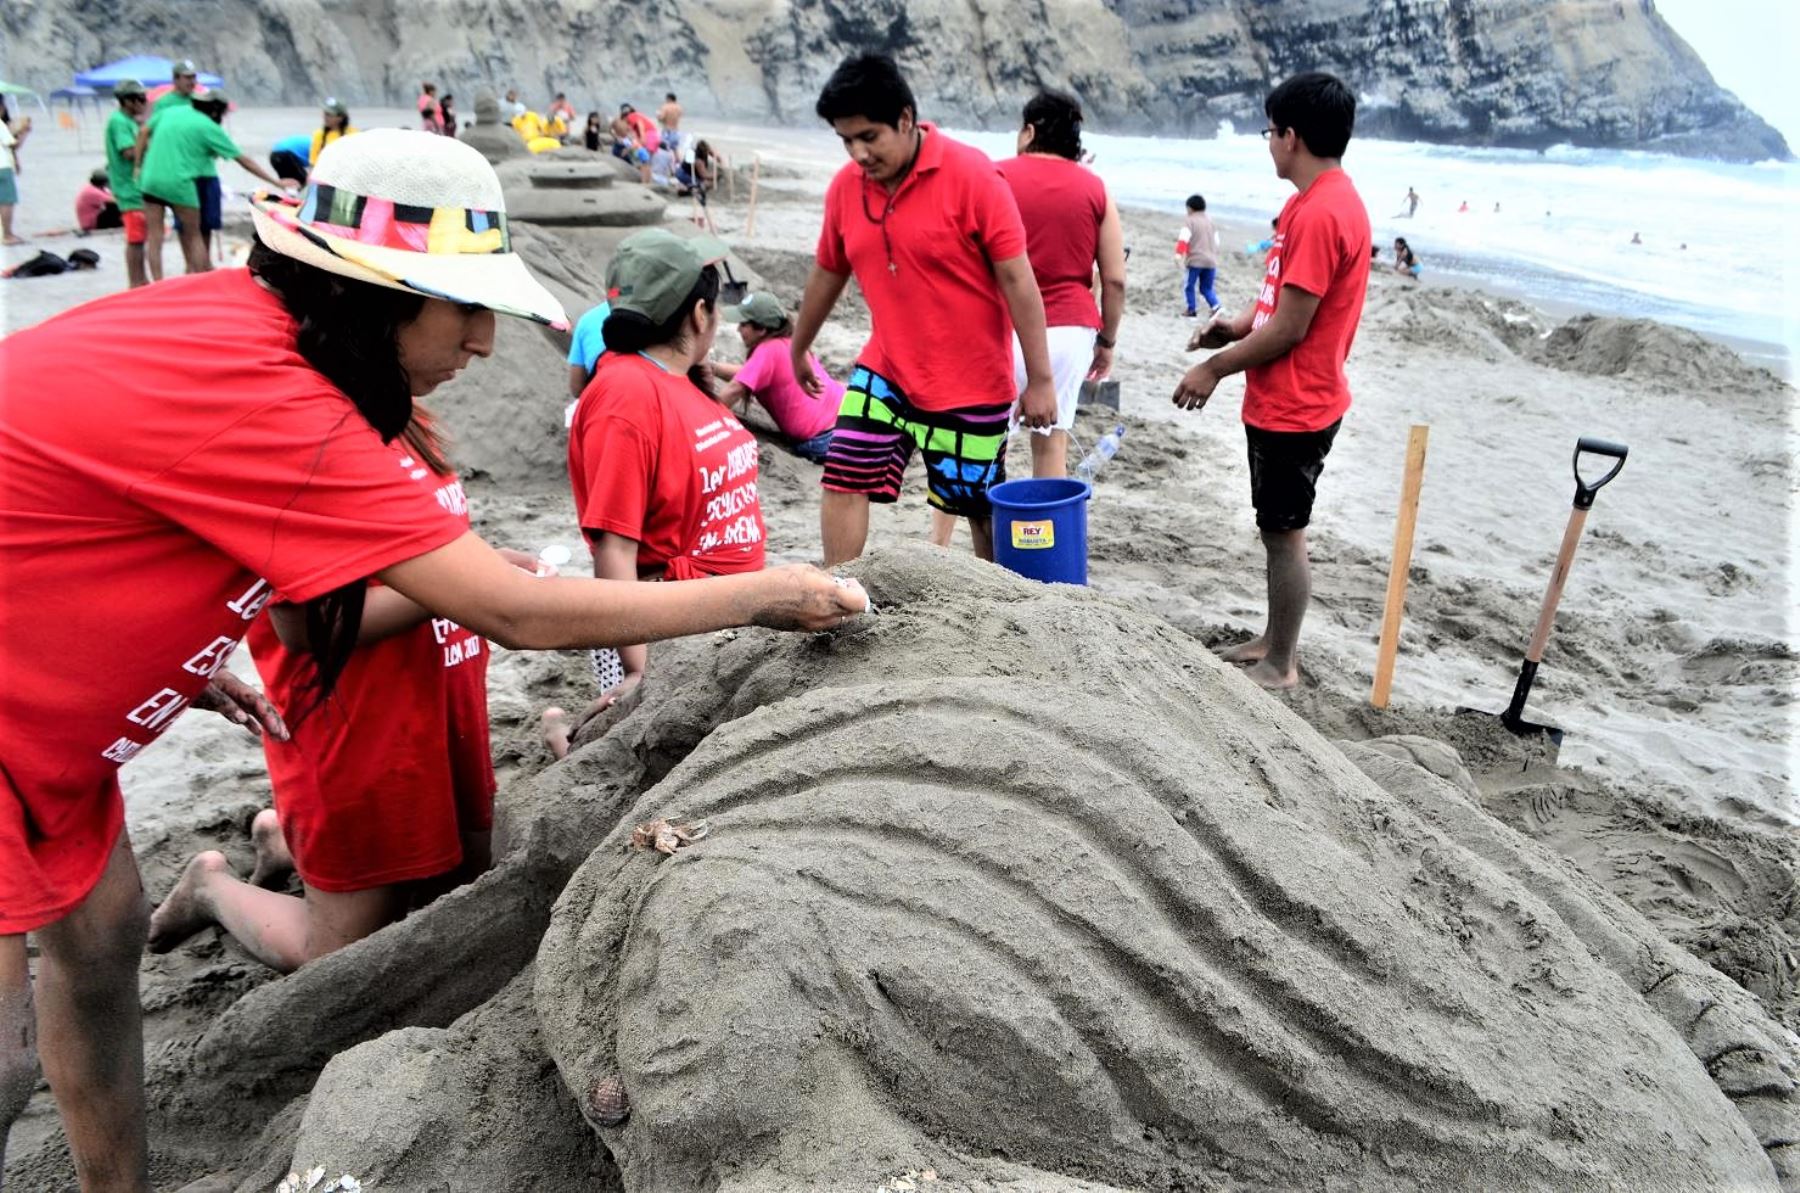 El objetivo fue promover el arte de las esculturas en arena como un instrumento educativo que permita sensibilizar a la población y visitantes sobre la protección del medio ambiente y el cuidado de las playas y el ecosistema marino.